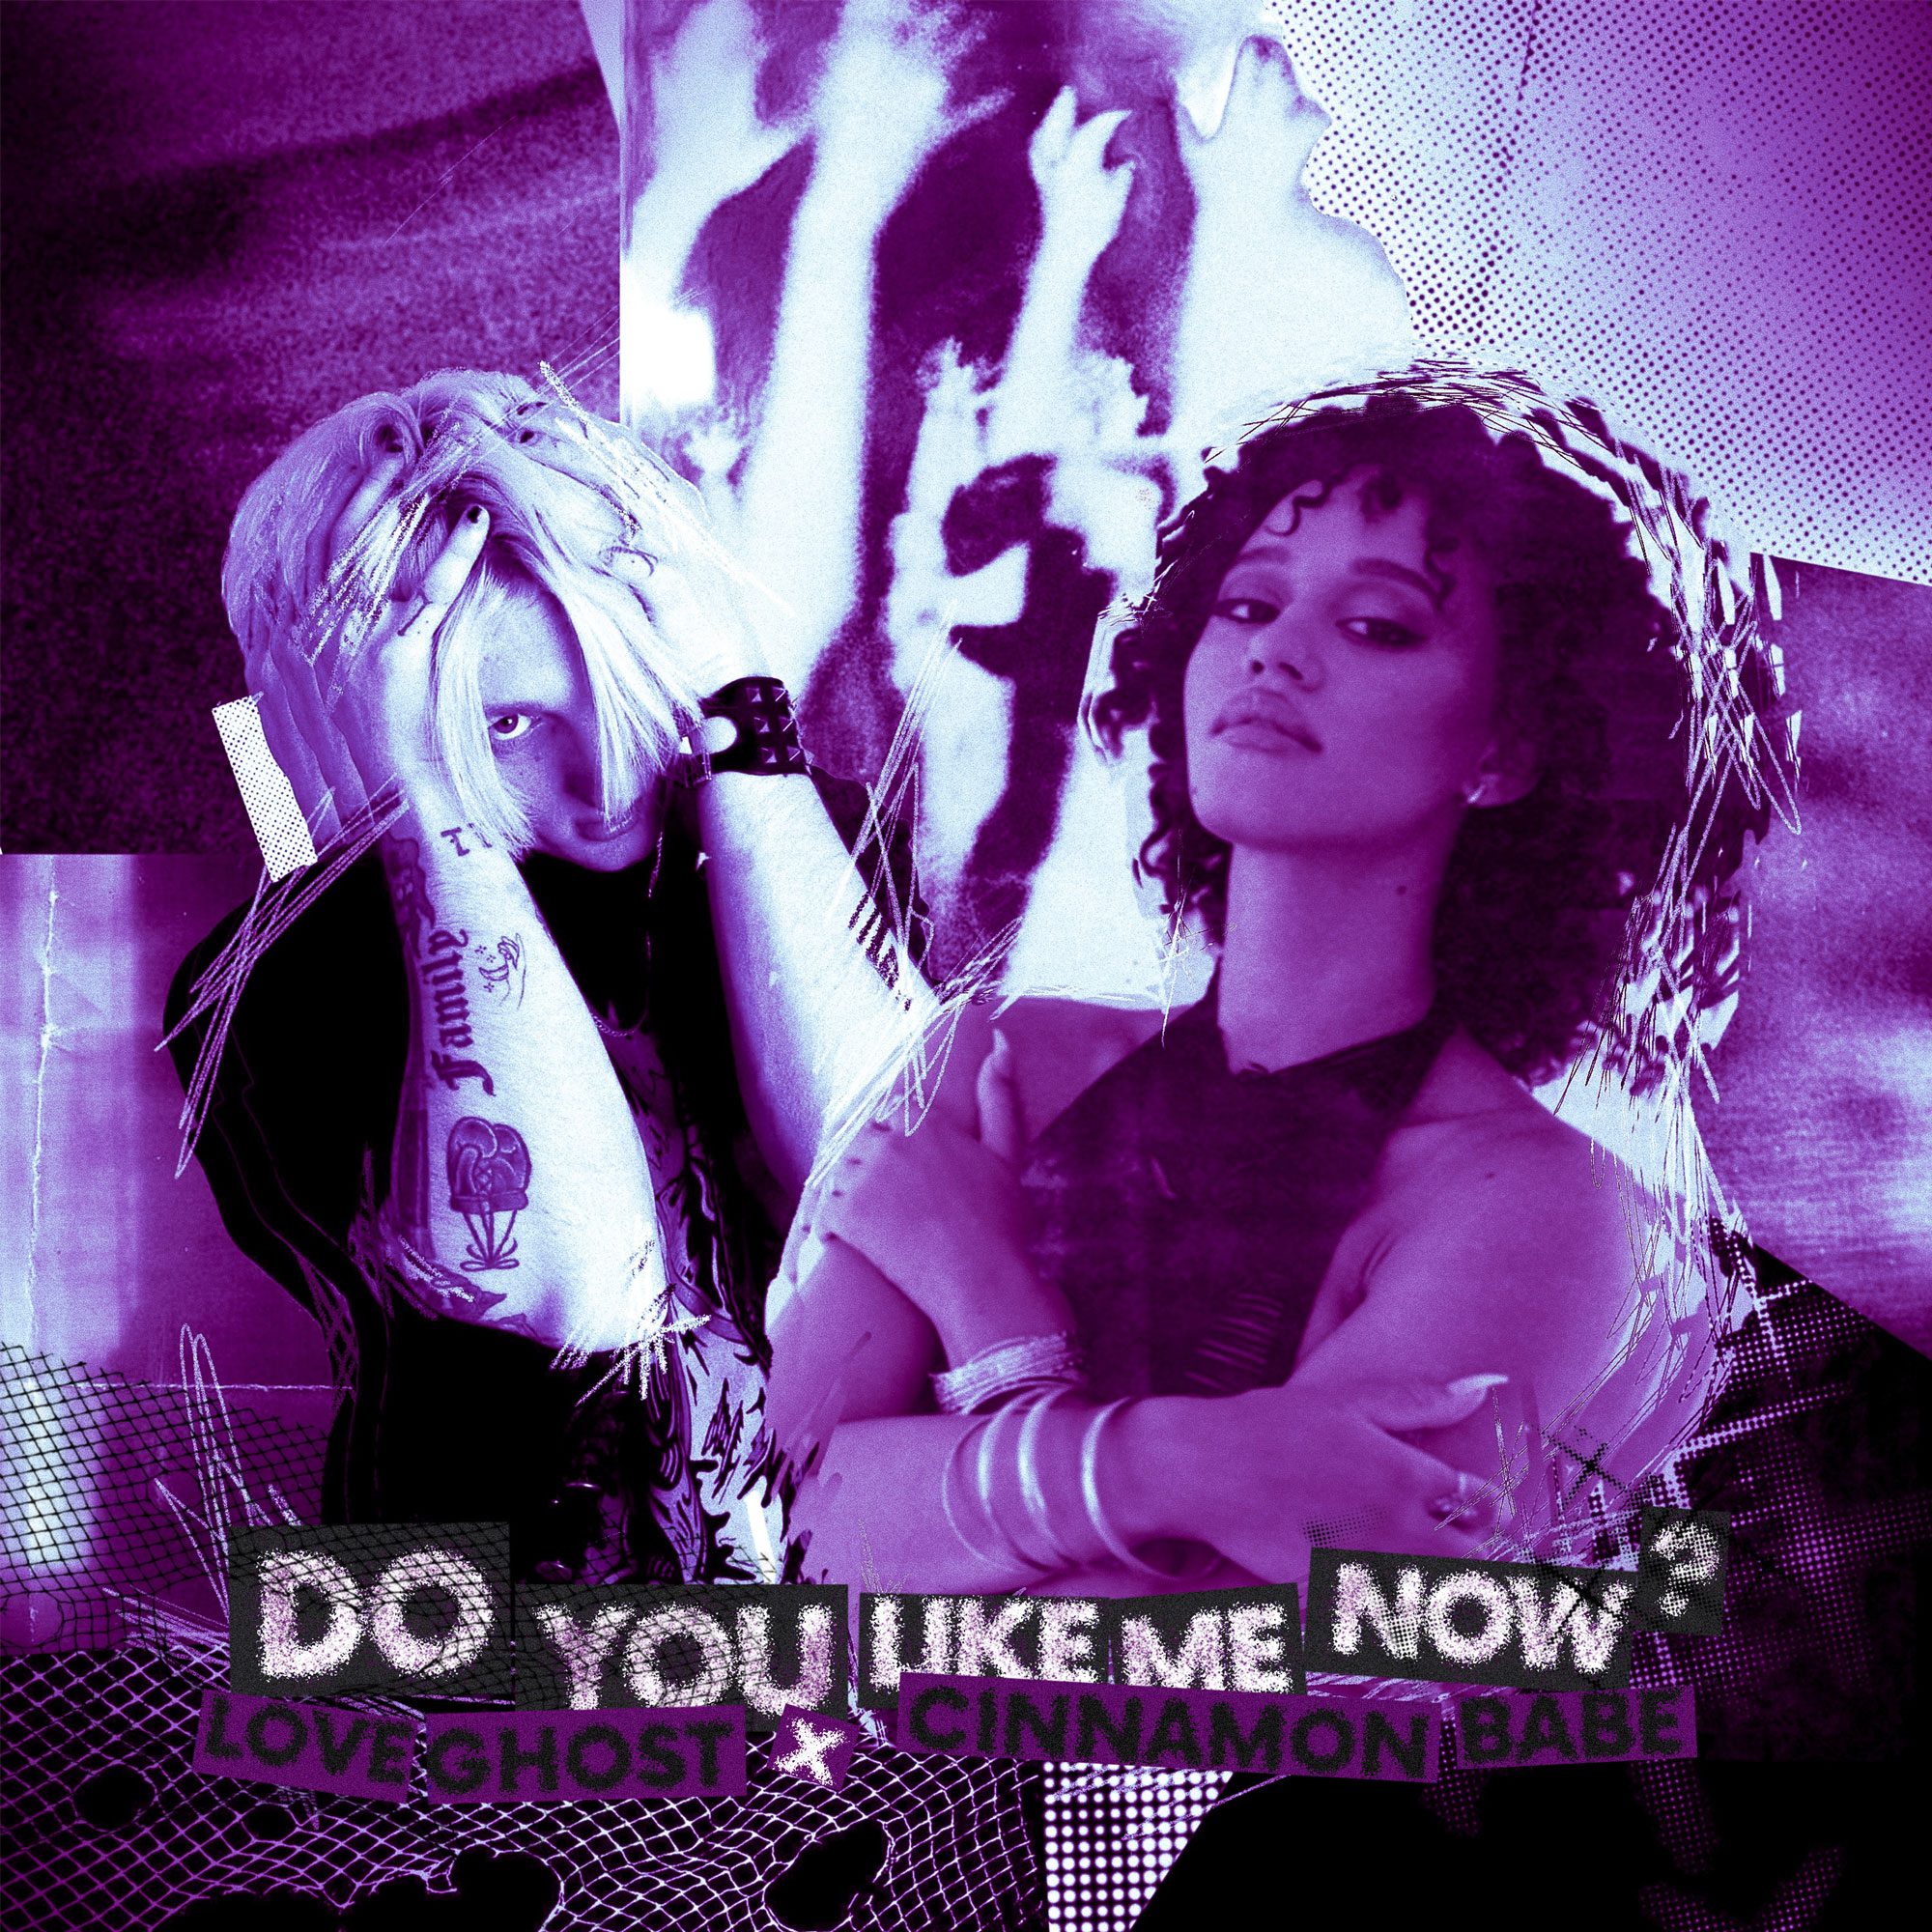  “Do You Like Me Now?” de Love Ghost y Cinnamon Babe: Un poderoso desafío para los críticos